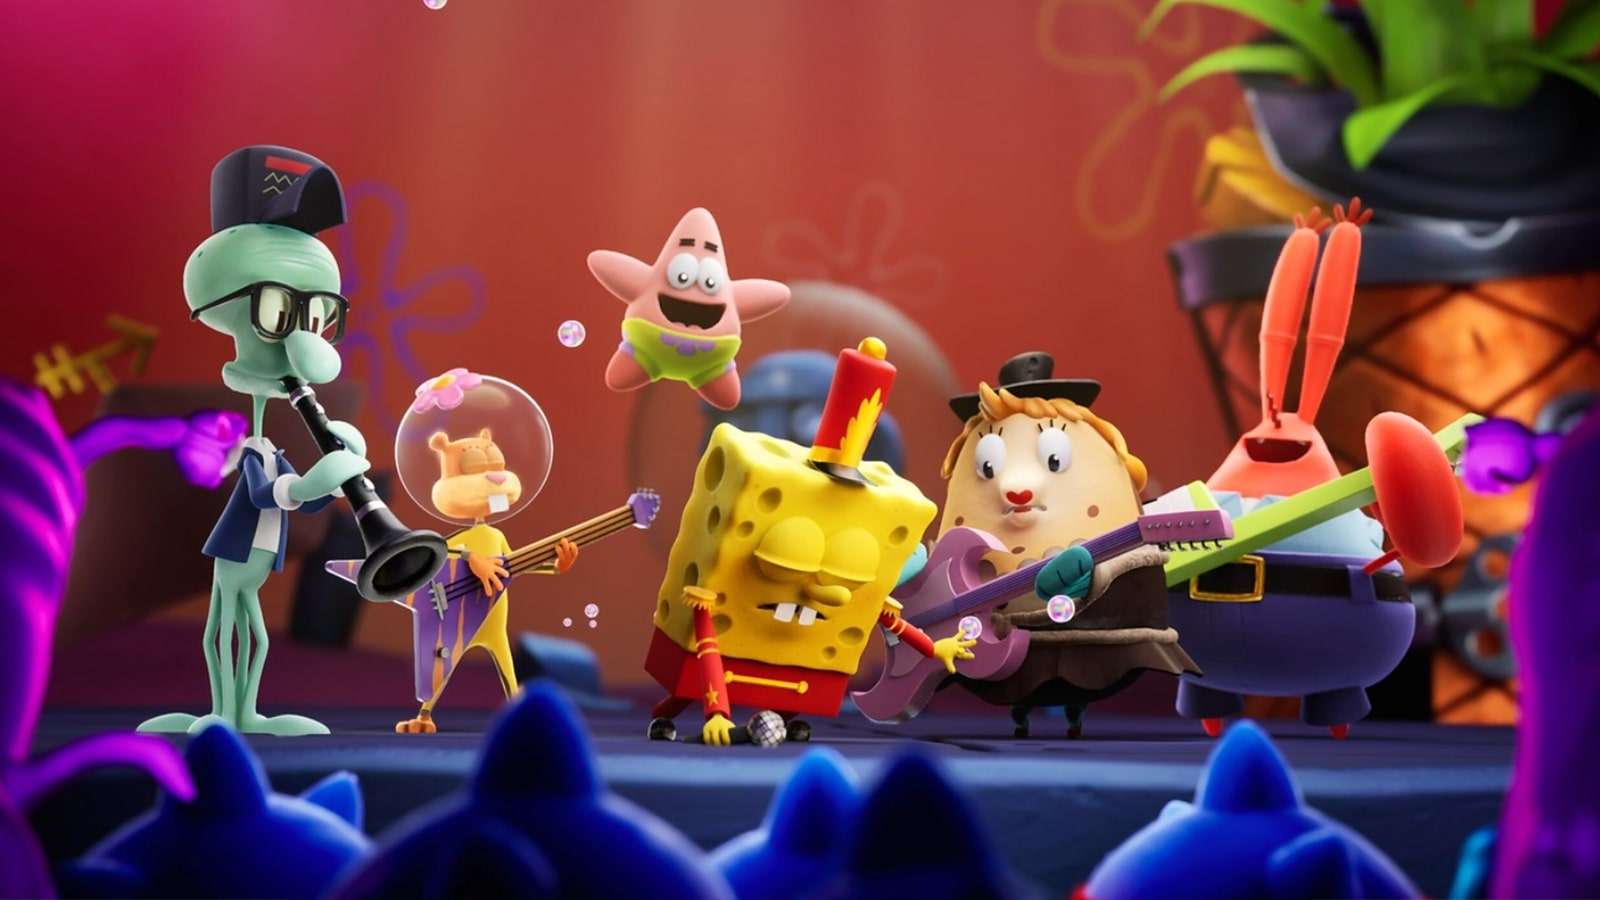 Spongebob Squarepants Cosmic Shake header image